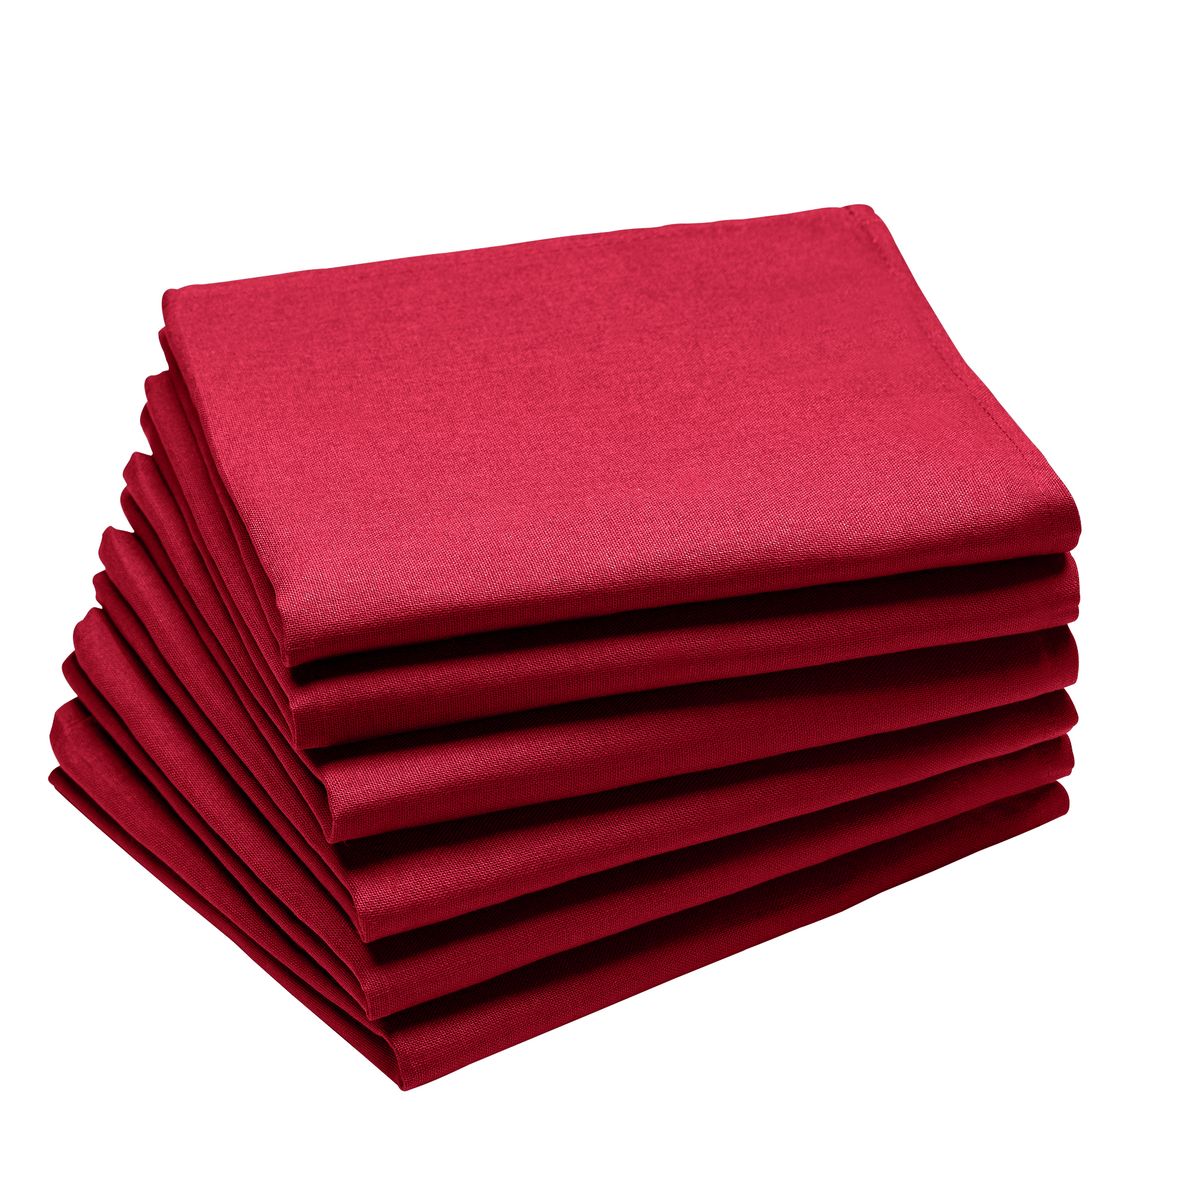 100% Coton 45X45 cm Lot 6 ou 12 serviettes de table Normandes Tradition